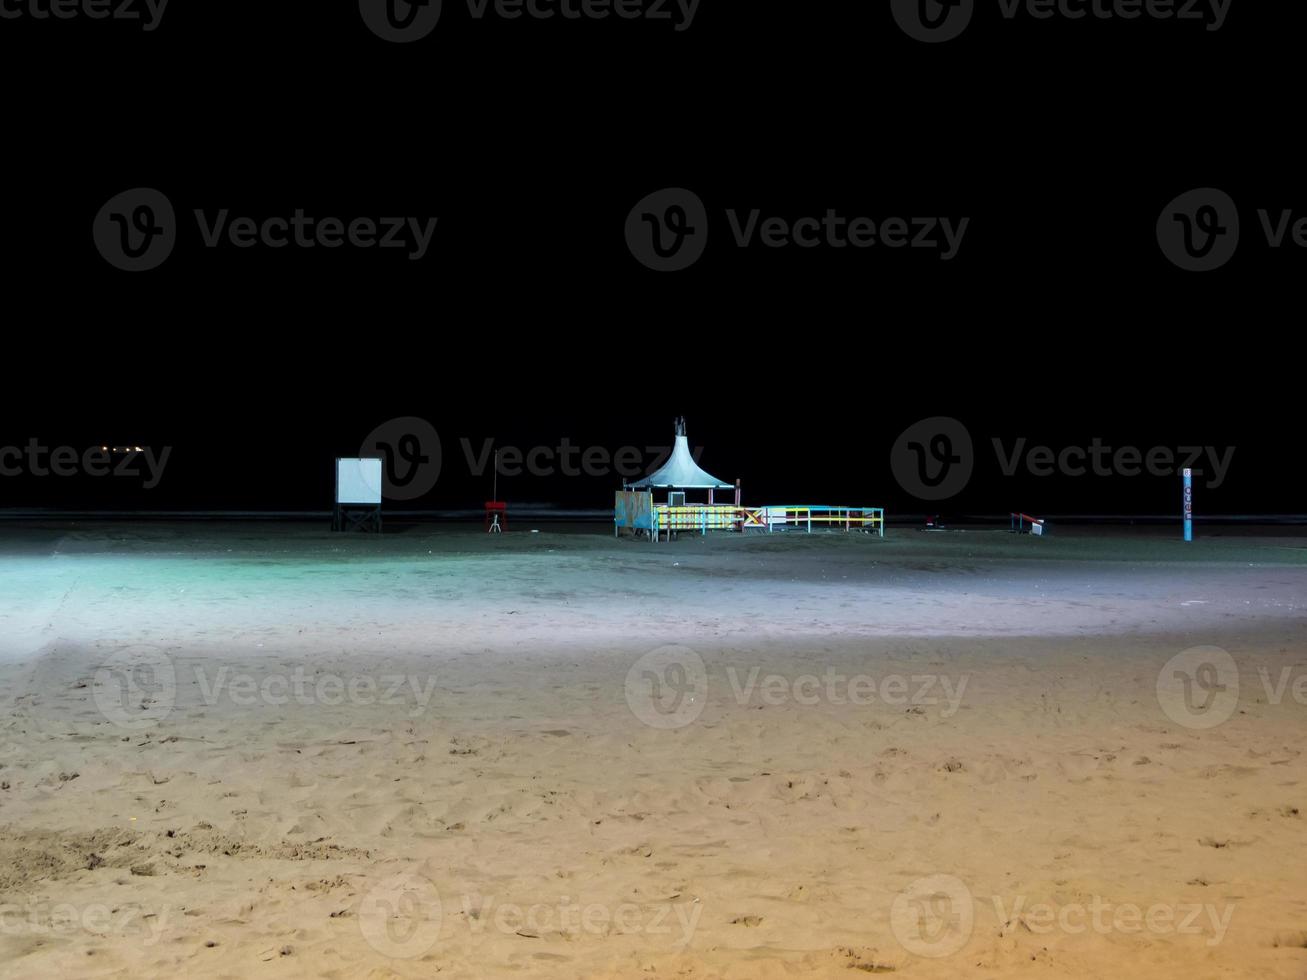 playa de noche foto